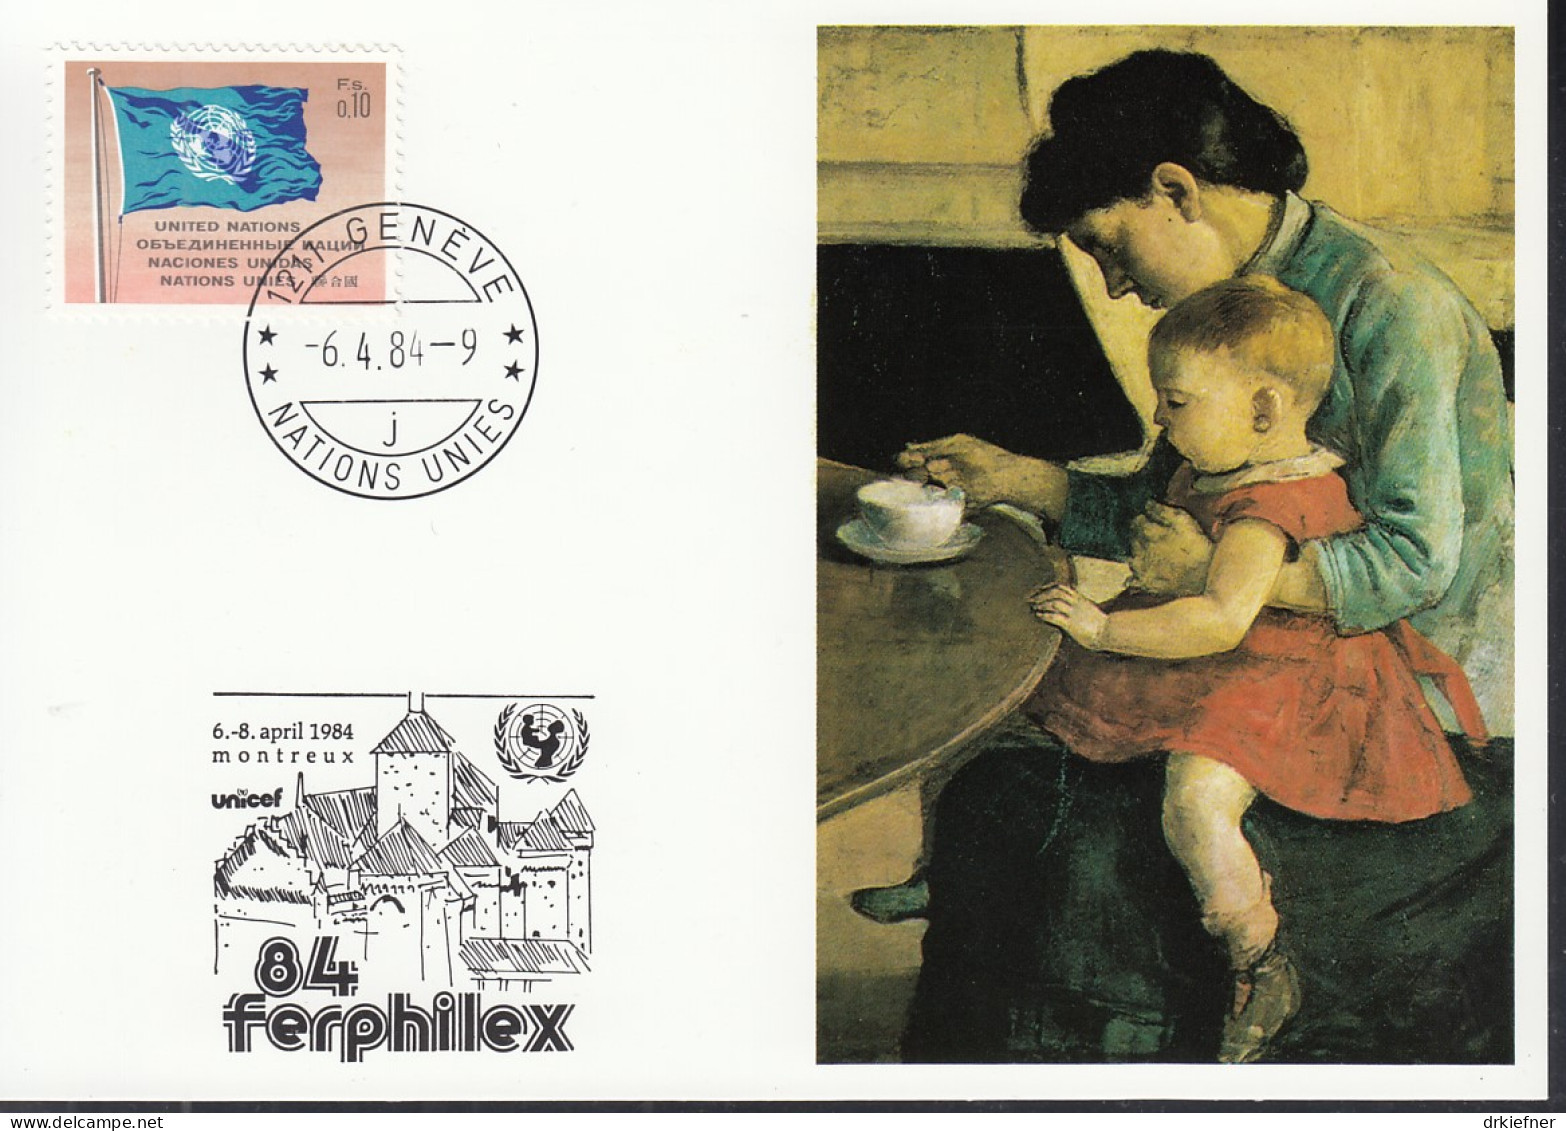 UNO NEW YORK  UNICEF-Kunstkarte, Mutter Und Kind Von Ferdinand Hodler, Aussellungskarte FERPHILEX Montreux, St: 6.4.1984 - Covers & Documents